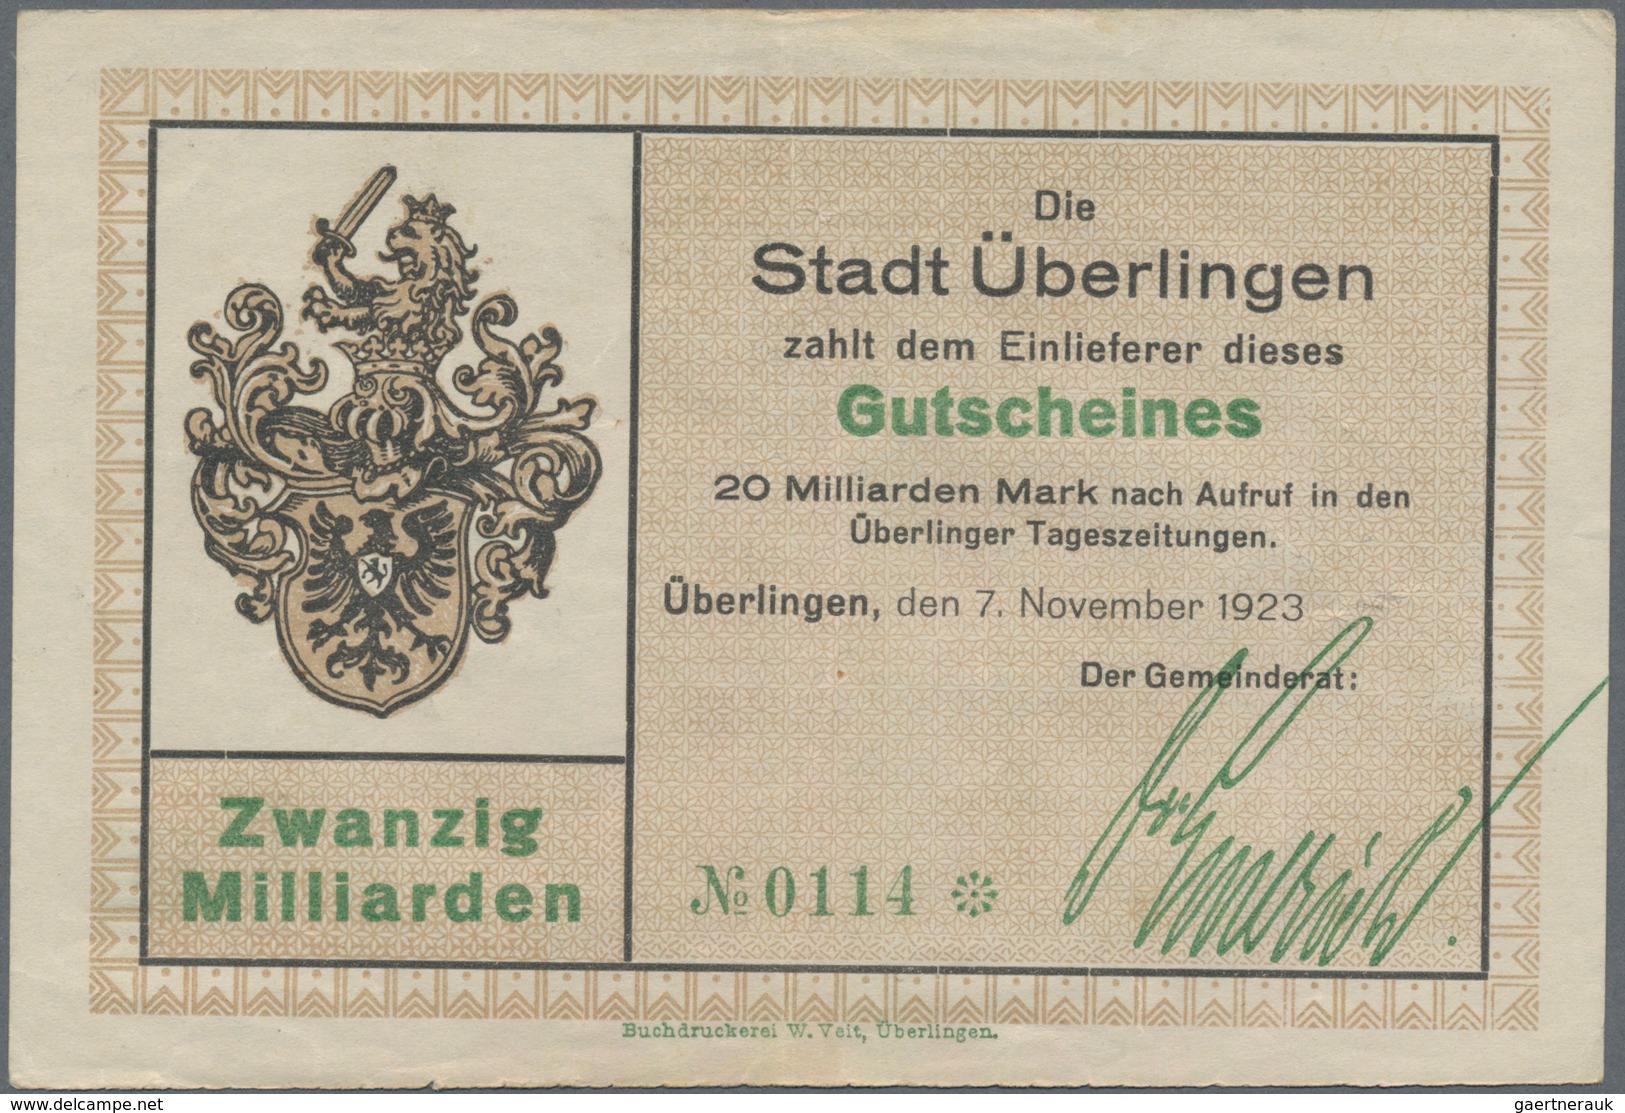 Deutschland - Notgeld - Baden: Überlingen, Stadt, 5 Tsd., 20 Tsd. Mark, 16.2.1923, mit Druckfirma un